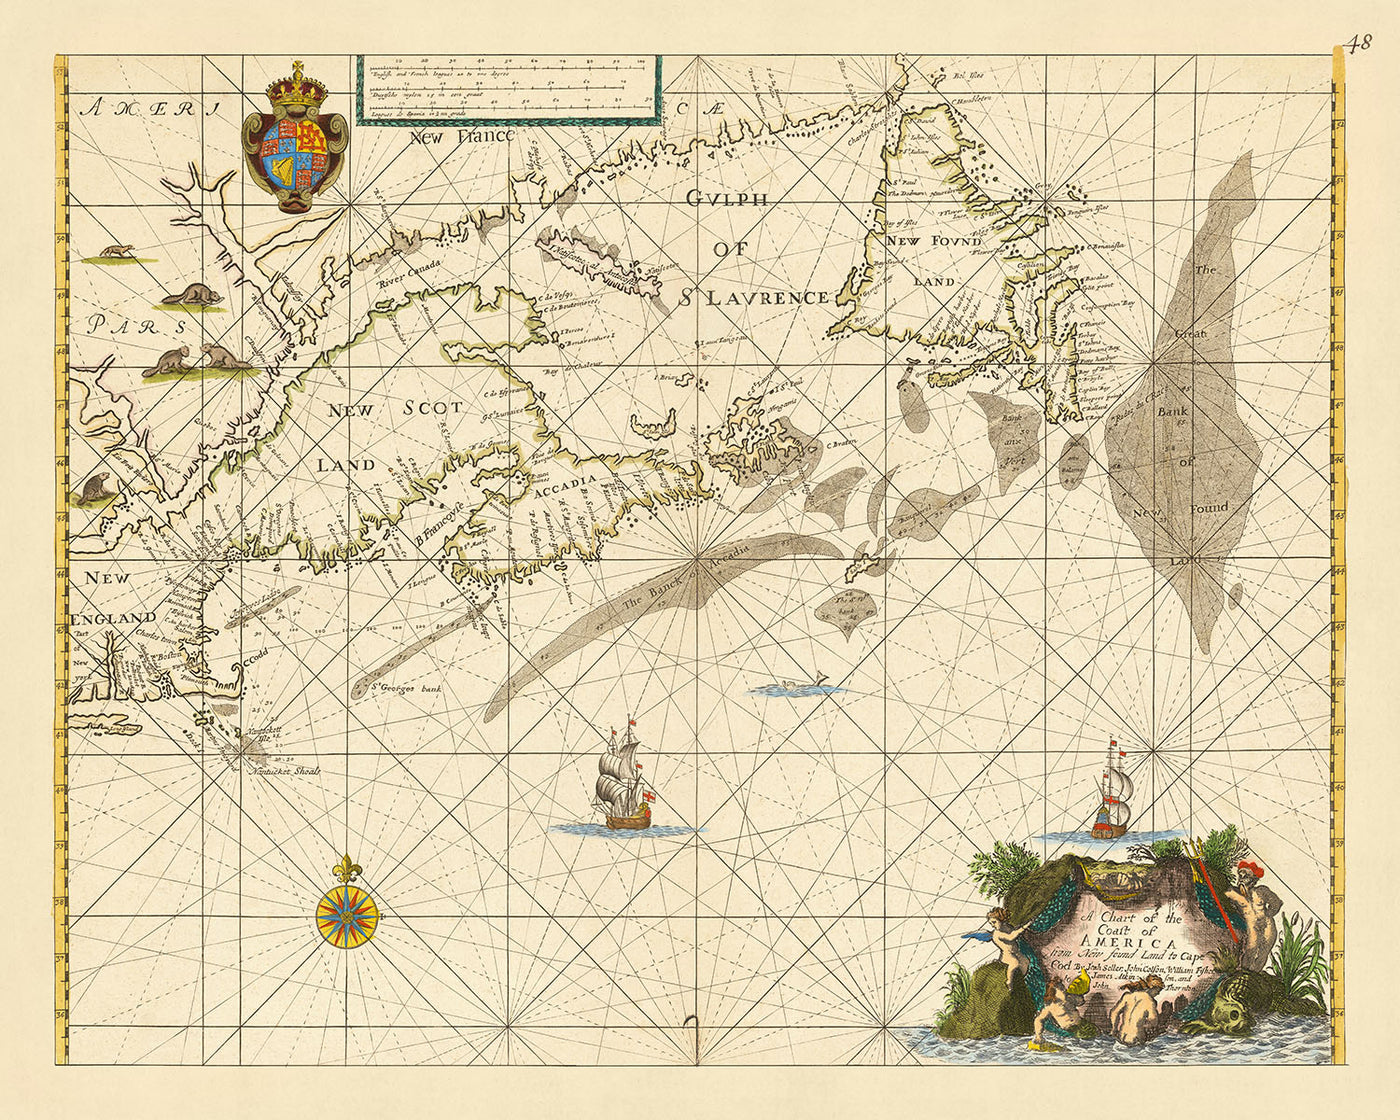 Ancienne carte du littoral nord-américain par le vendeur, 1674 : Terre-Neuve, Cape Cod, péninsule d'Avalon, commerce des fourrures de la Compagnie de la Baie d'Hudson, Traité de Westminster.